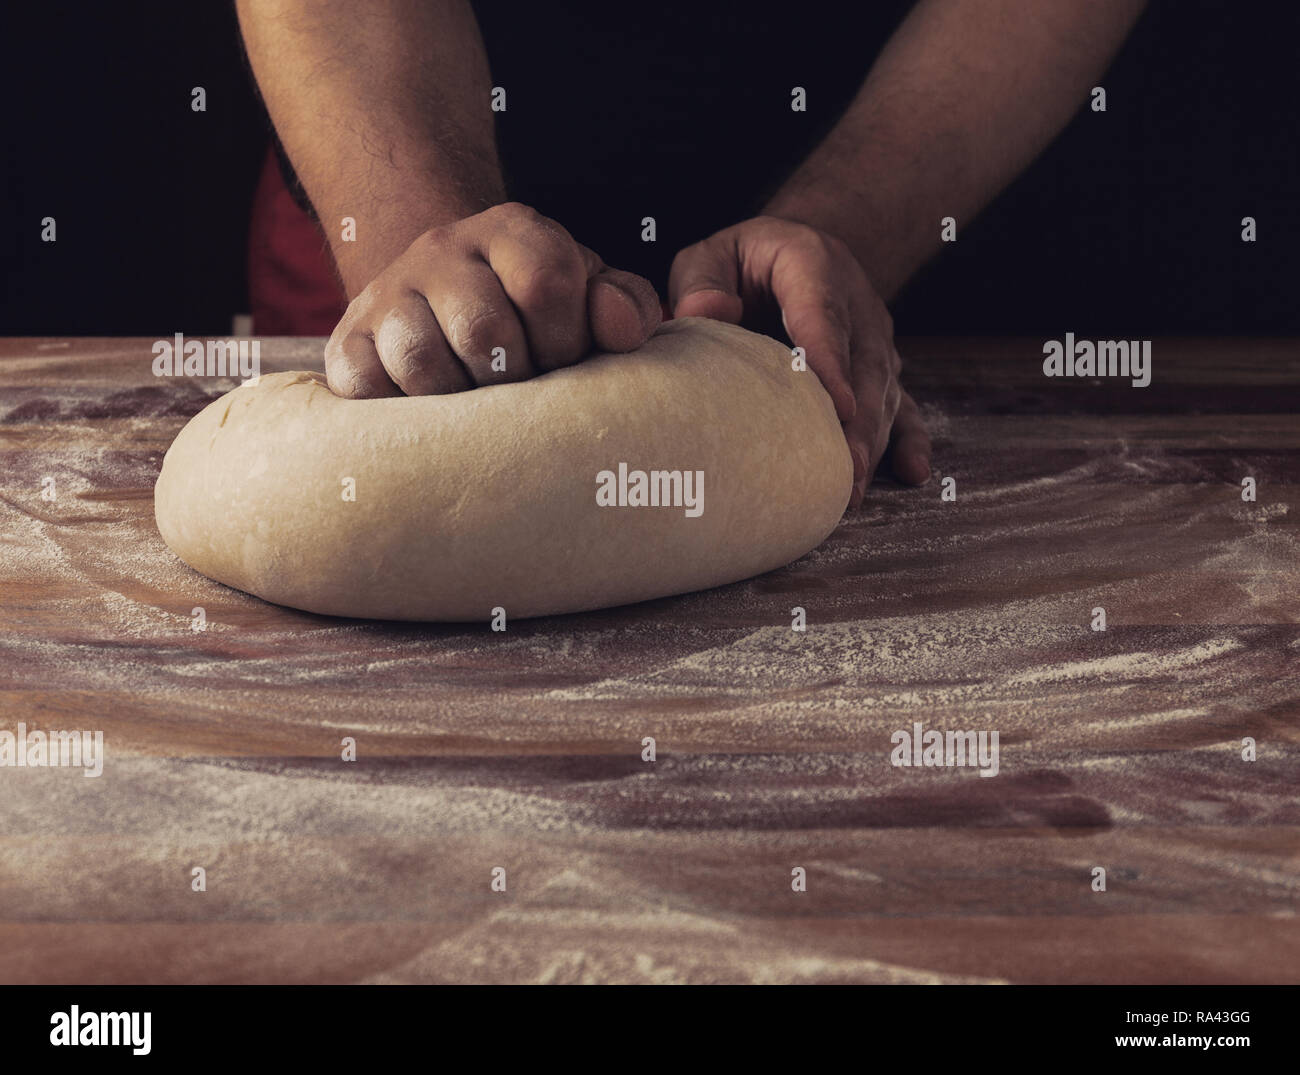 Chef boulanger préparer la pâte à pain dans une boulangerie. Cuisine professionnelle. Stock photo Banque D'Images